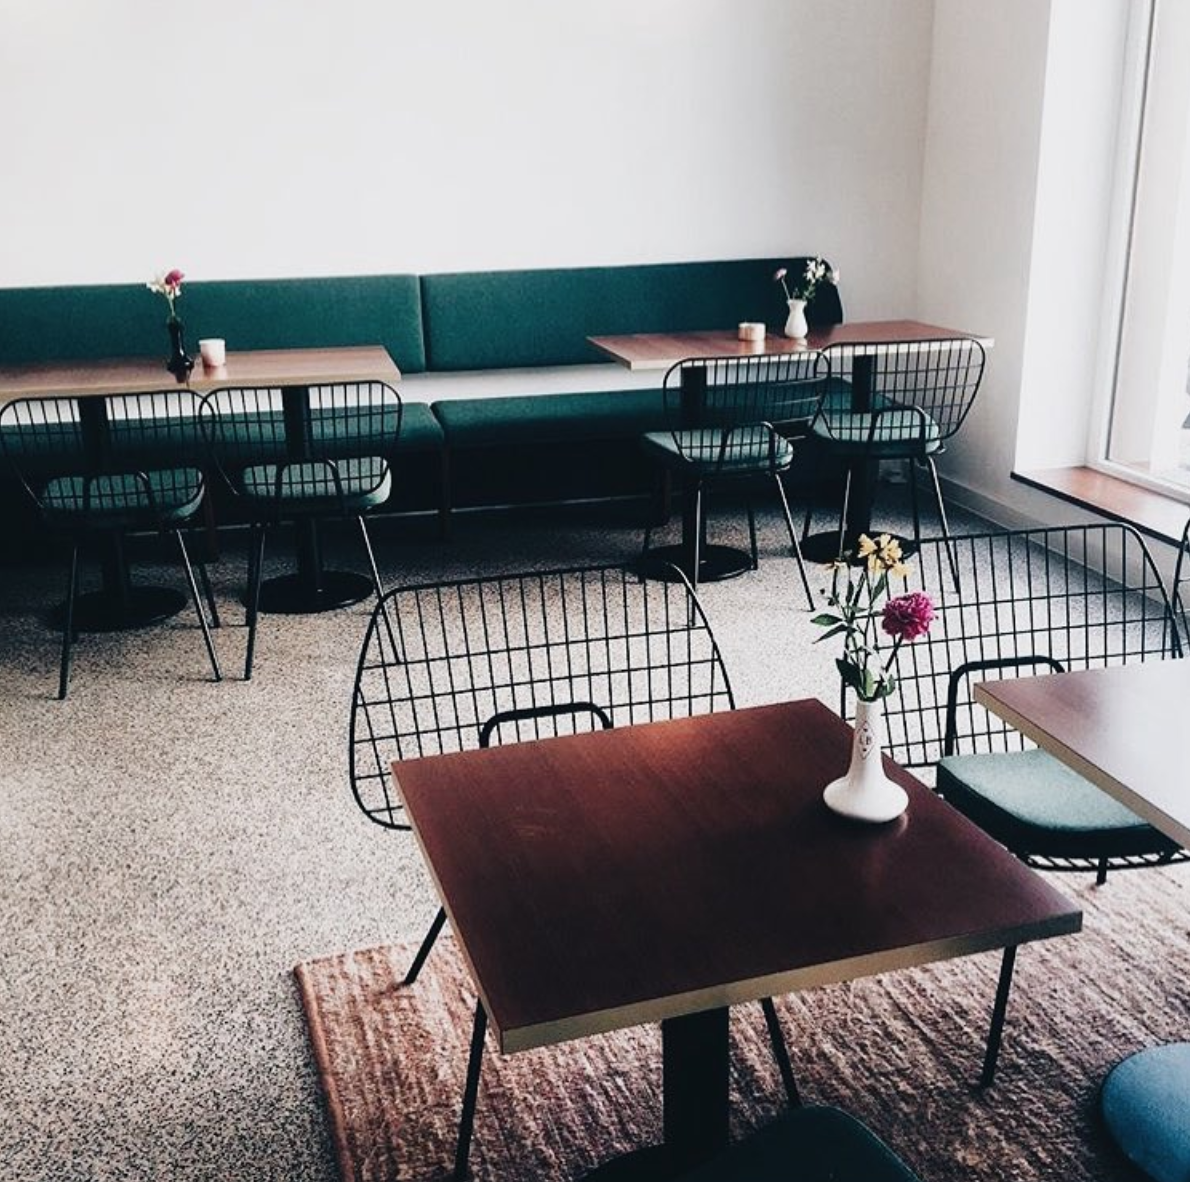 Einfach schön @liebesbisschencafe #hamburg einrichtung #interieur #interiors #hygge